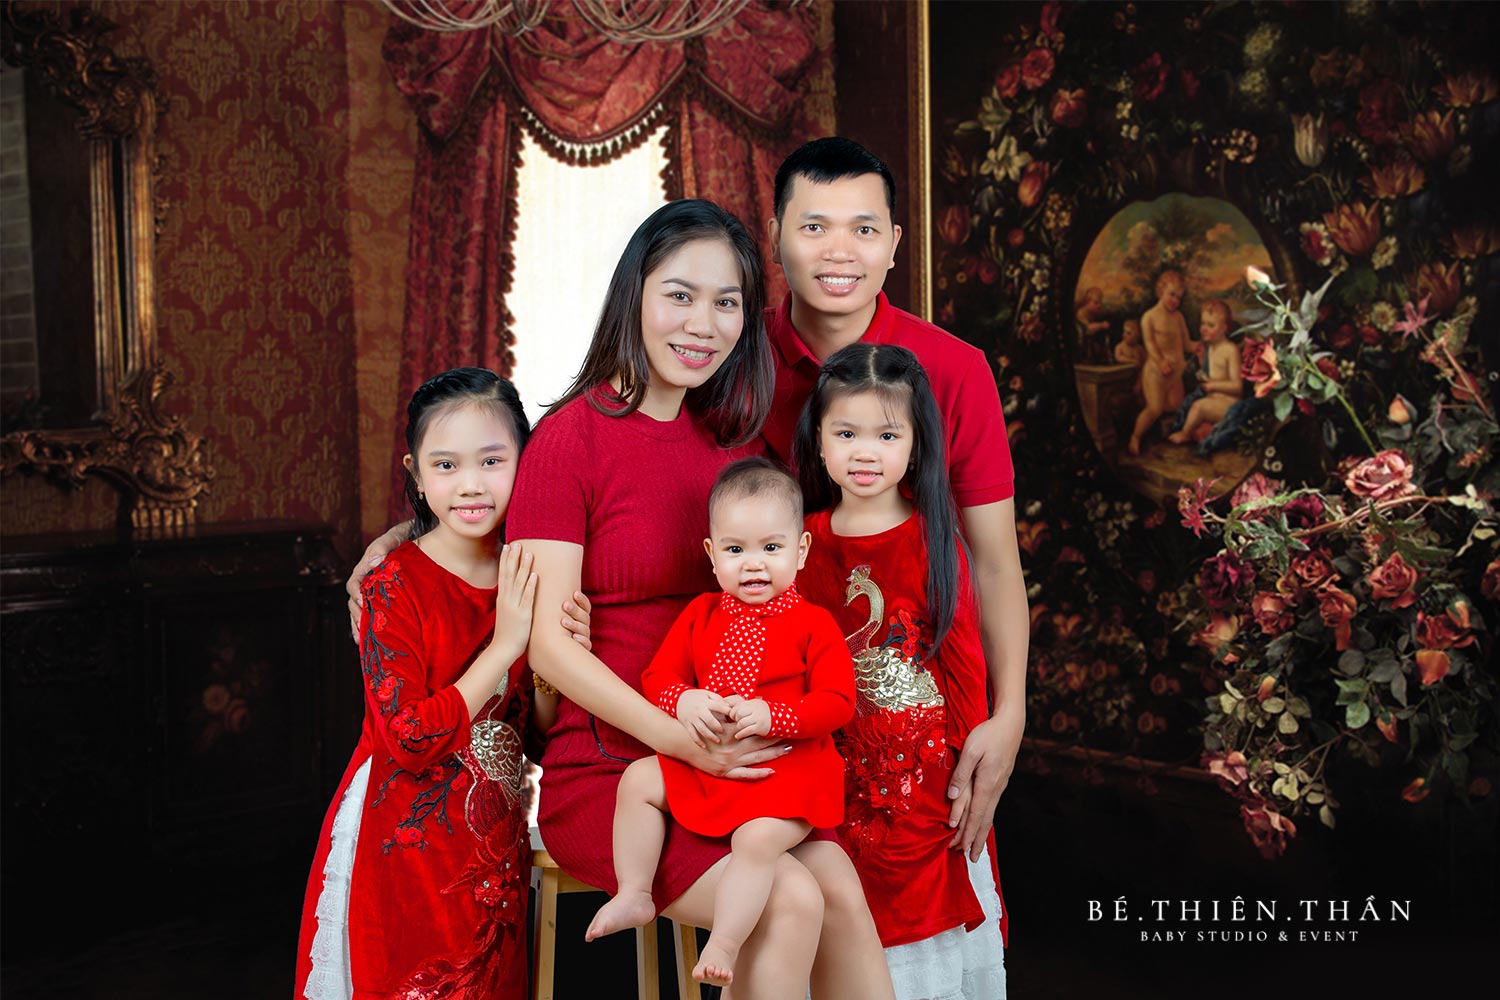 Chụp ảnh gia đình, đại gia đình, ngày Tết là truyền thống đẹp của mỗi gia đình Việt. Với dịch vụ chụp ảnh gia đình chuyên nghiệp của chúng tôi, bạn sẽ tạo ra những bức ảnh đẹp và đầy ý nghĩa để lưu giữ kỷ niệm của gia đình mình.